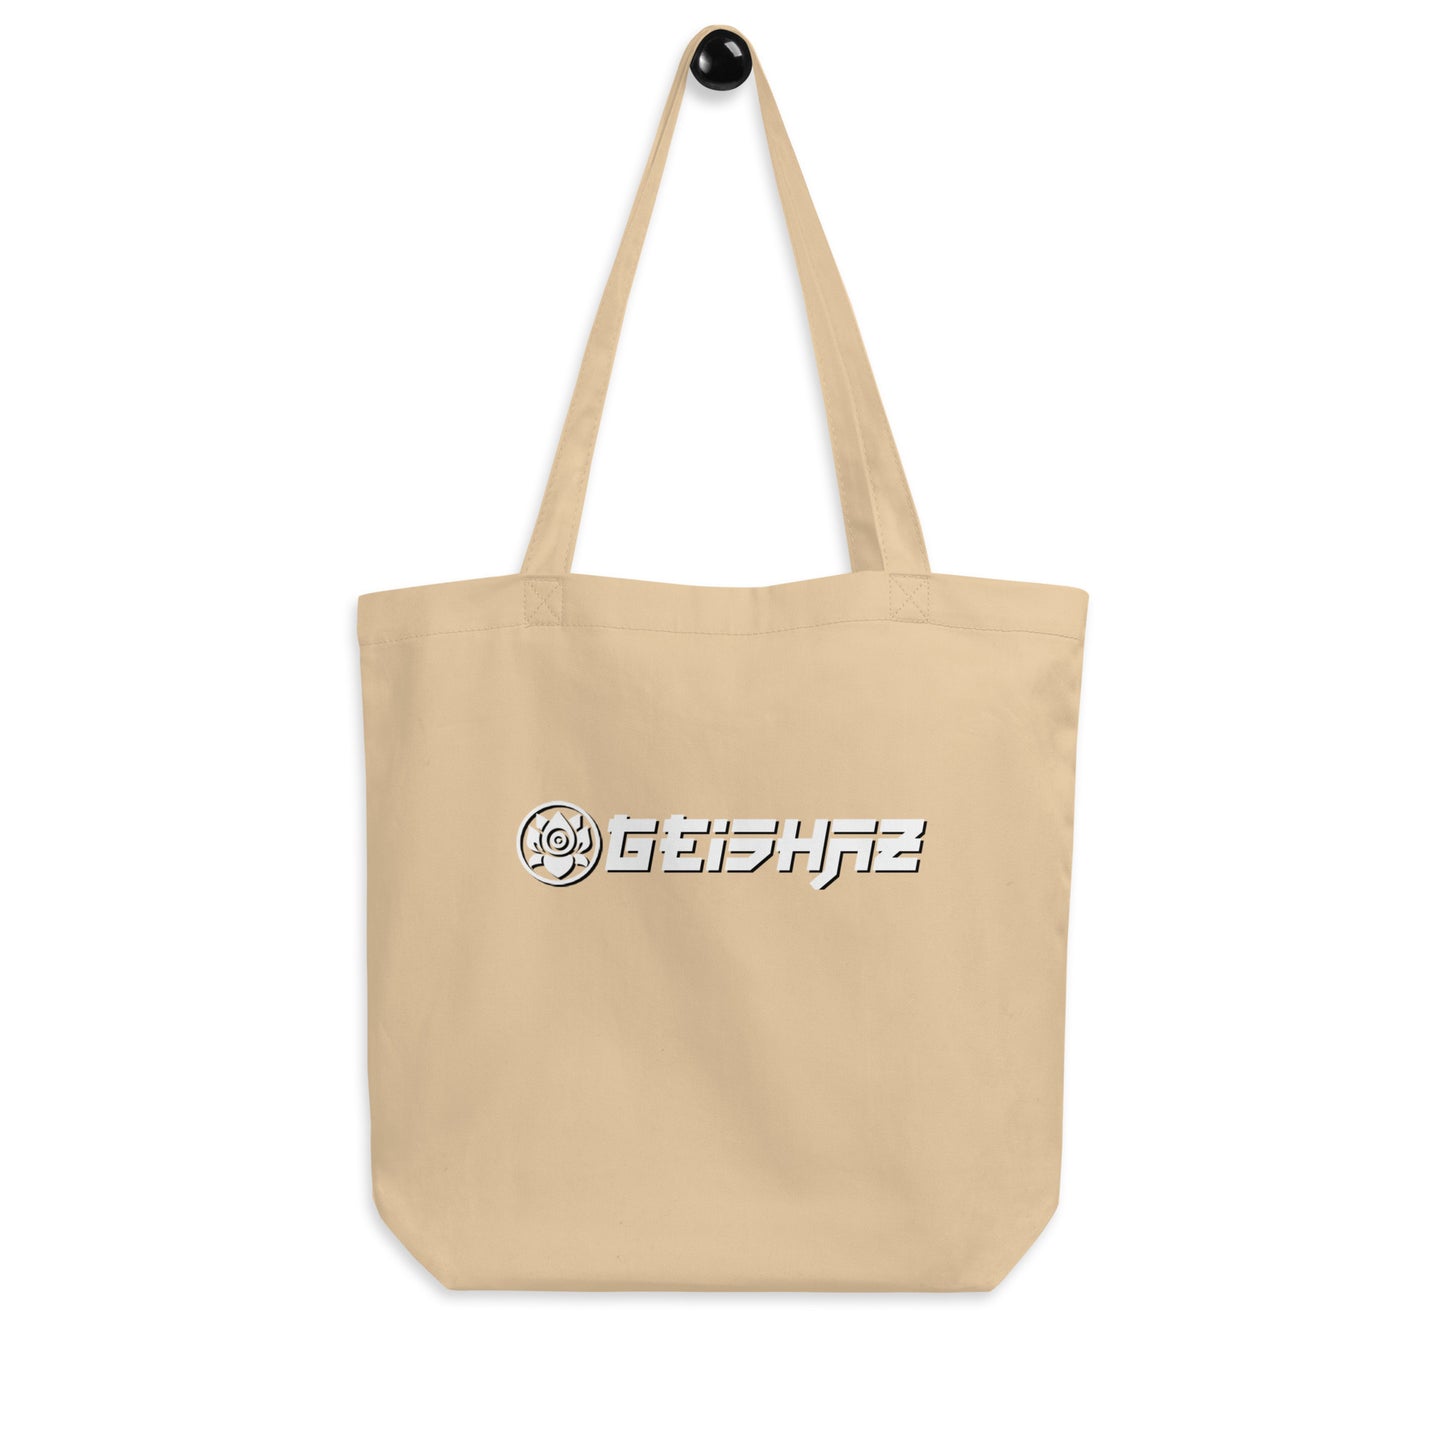 GEISHAZ Eco Tote Bag